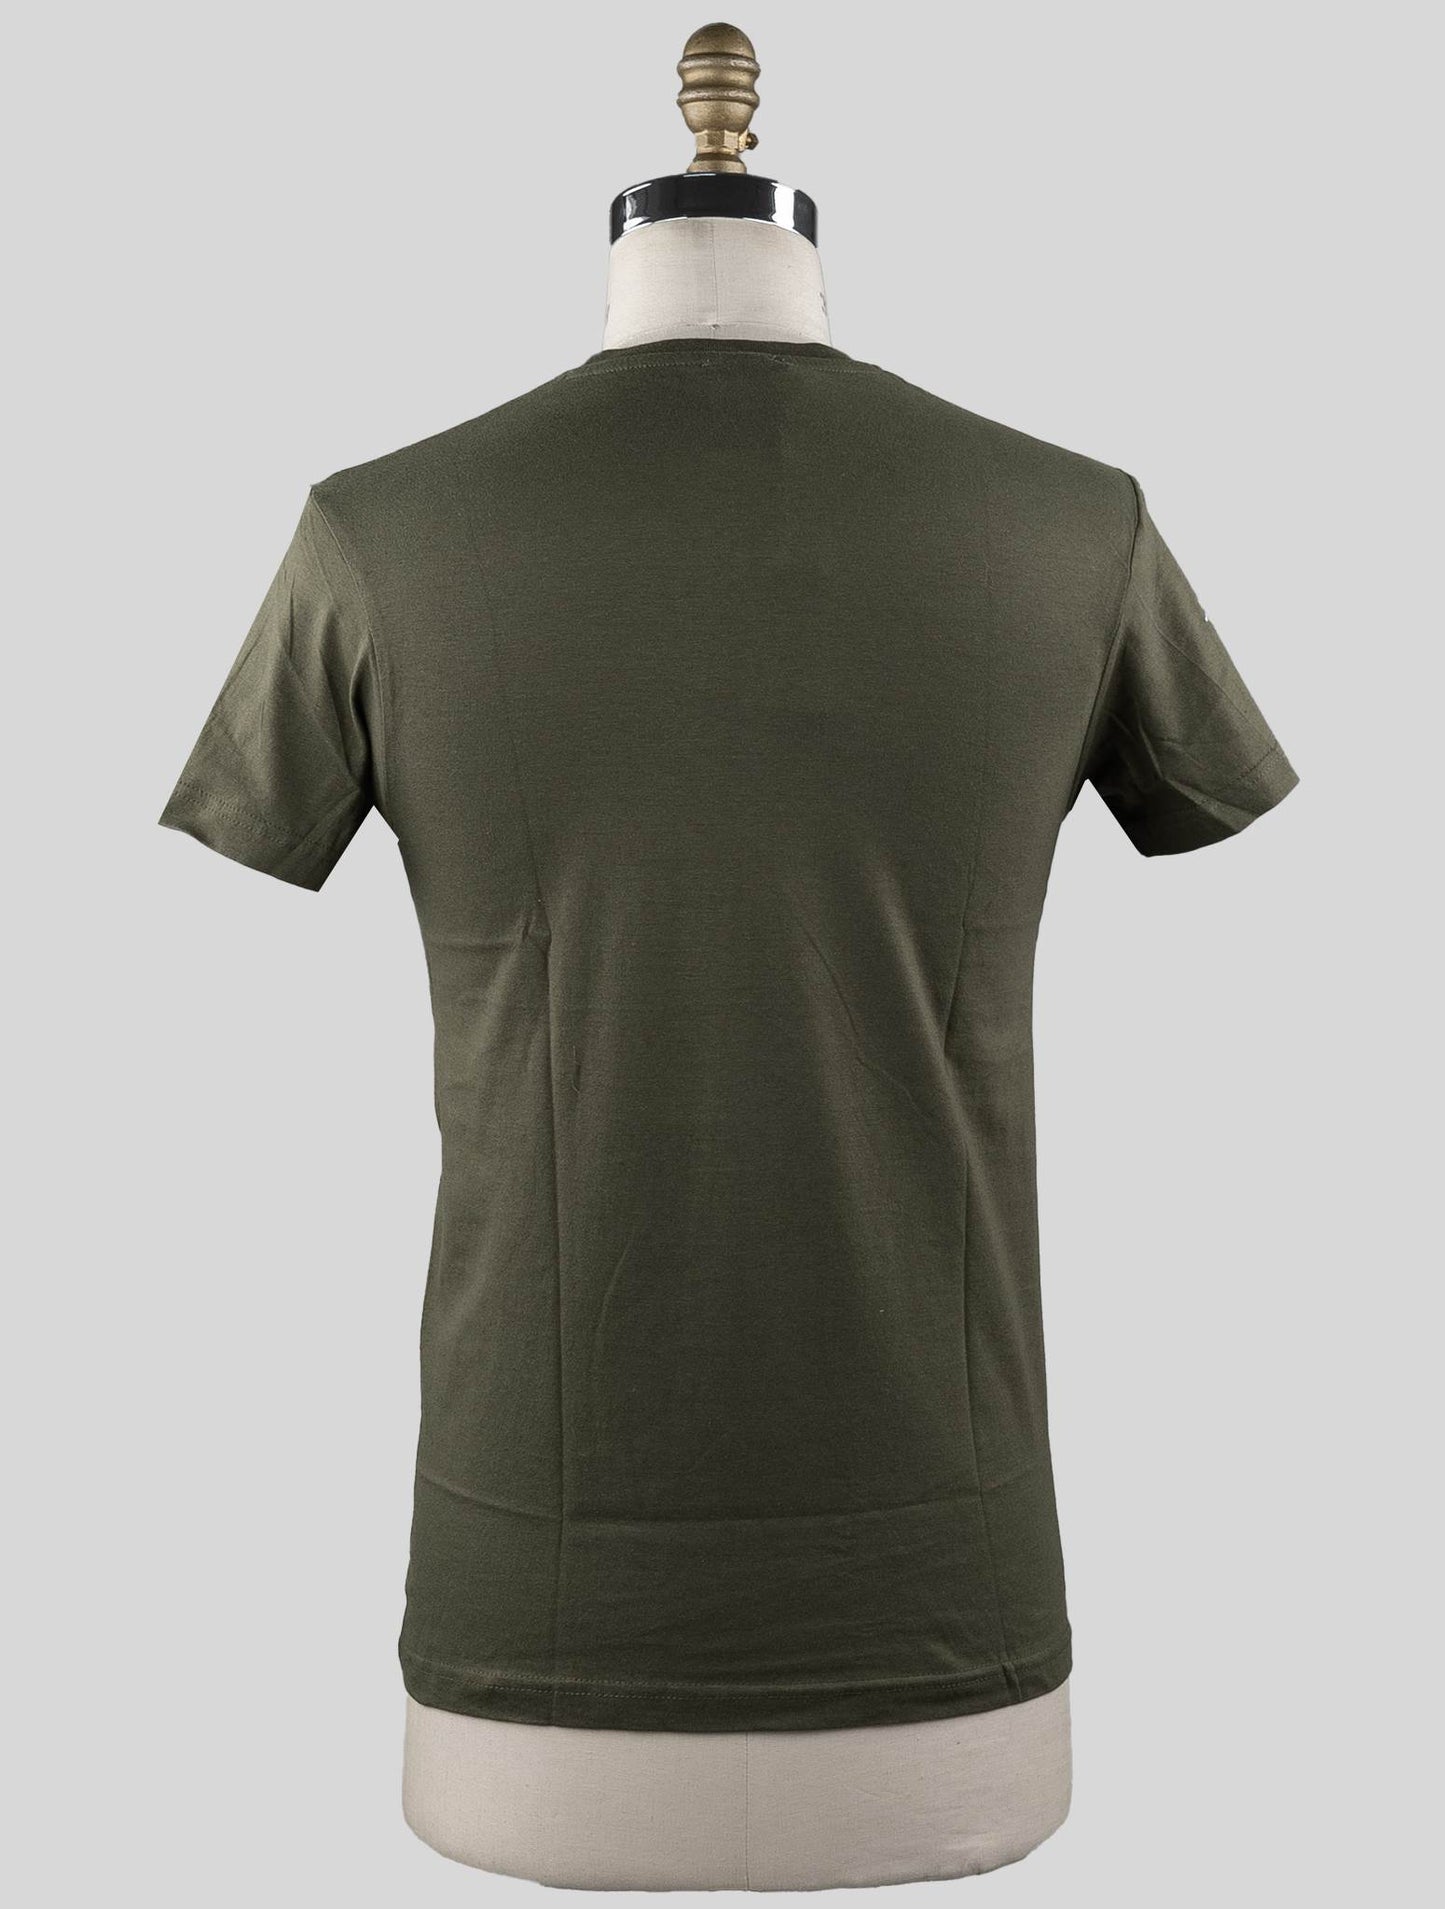 Sartorio napoli green cotton special edition t-shirt